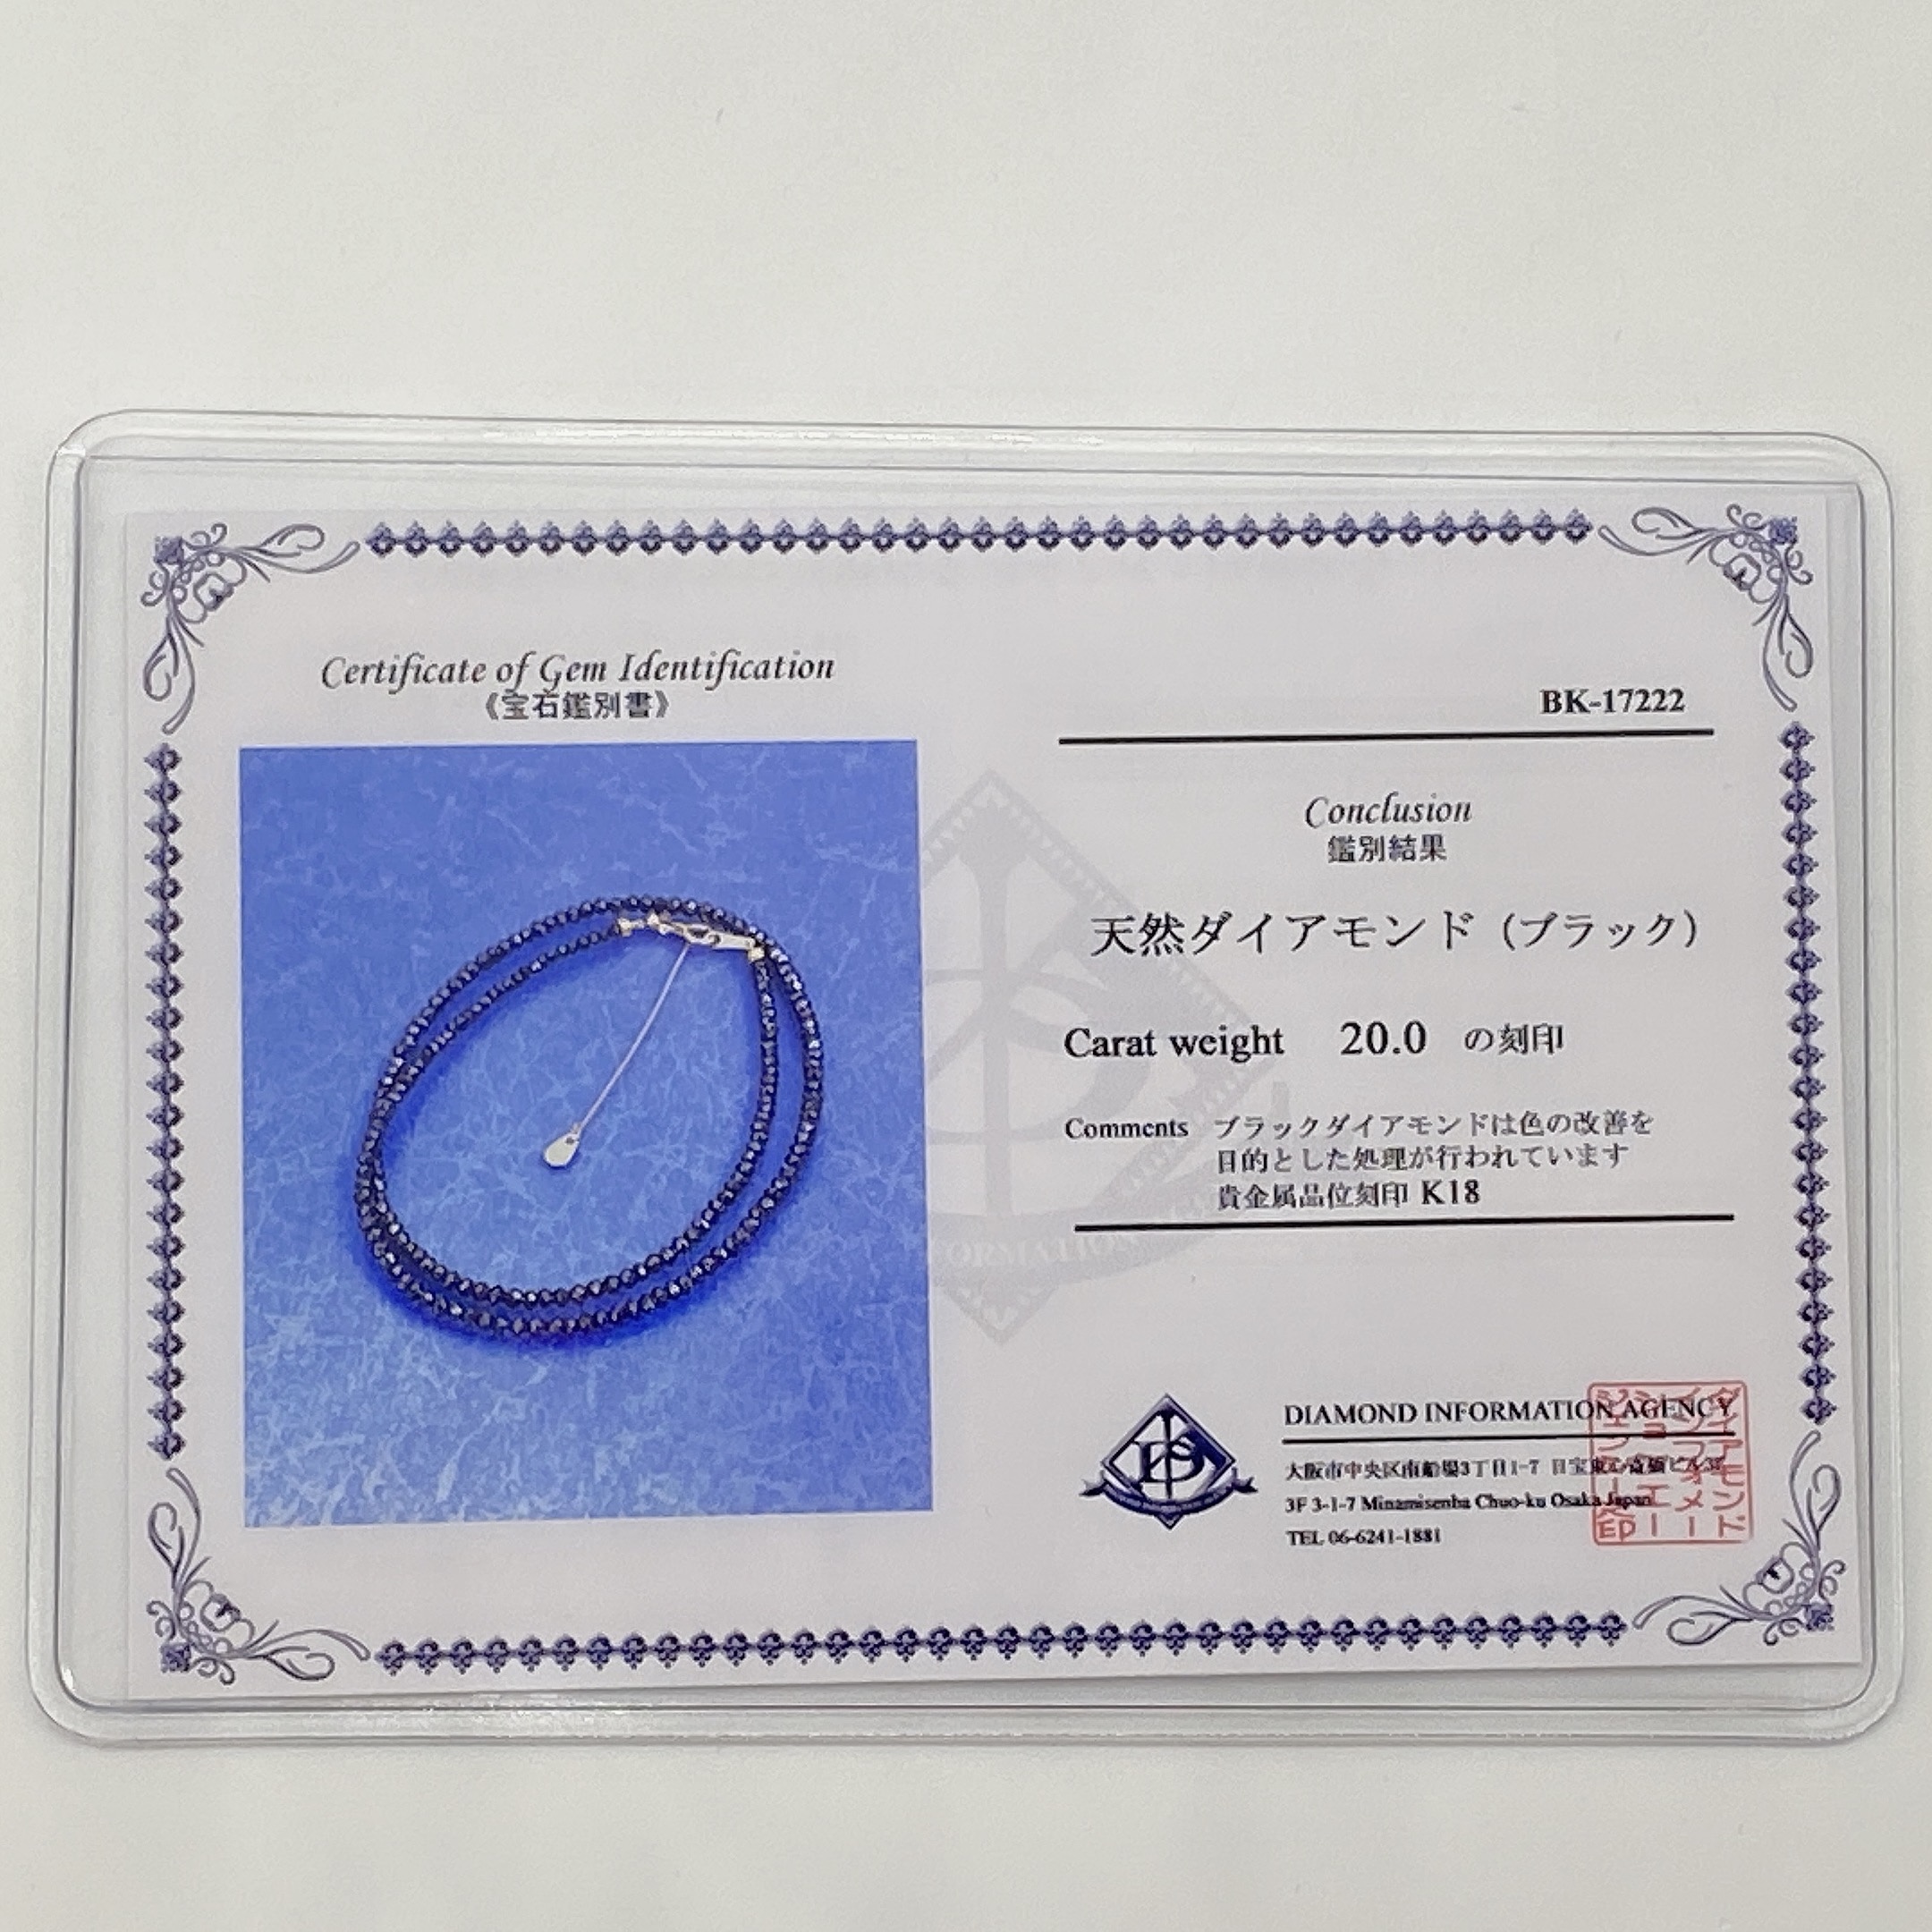 K18YG ブラックダイヤ【AAA】20ct ブラックダイヤネックレス （SG-0006）